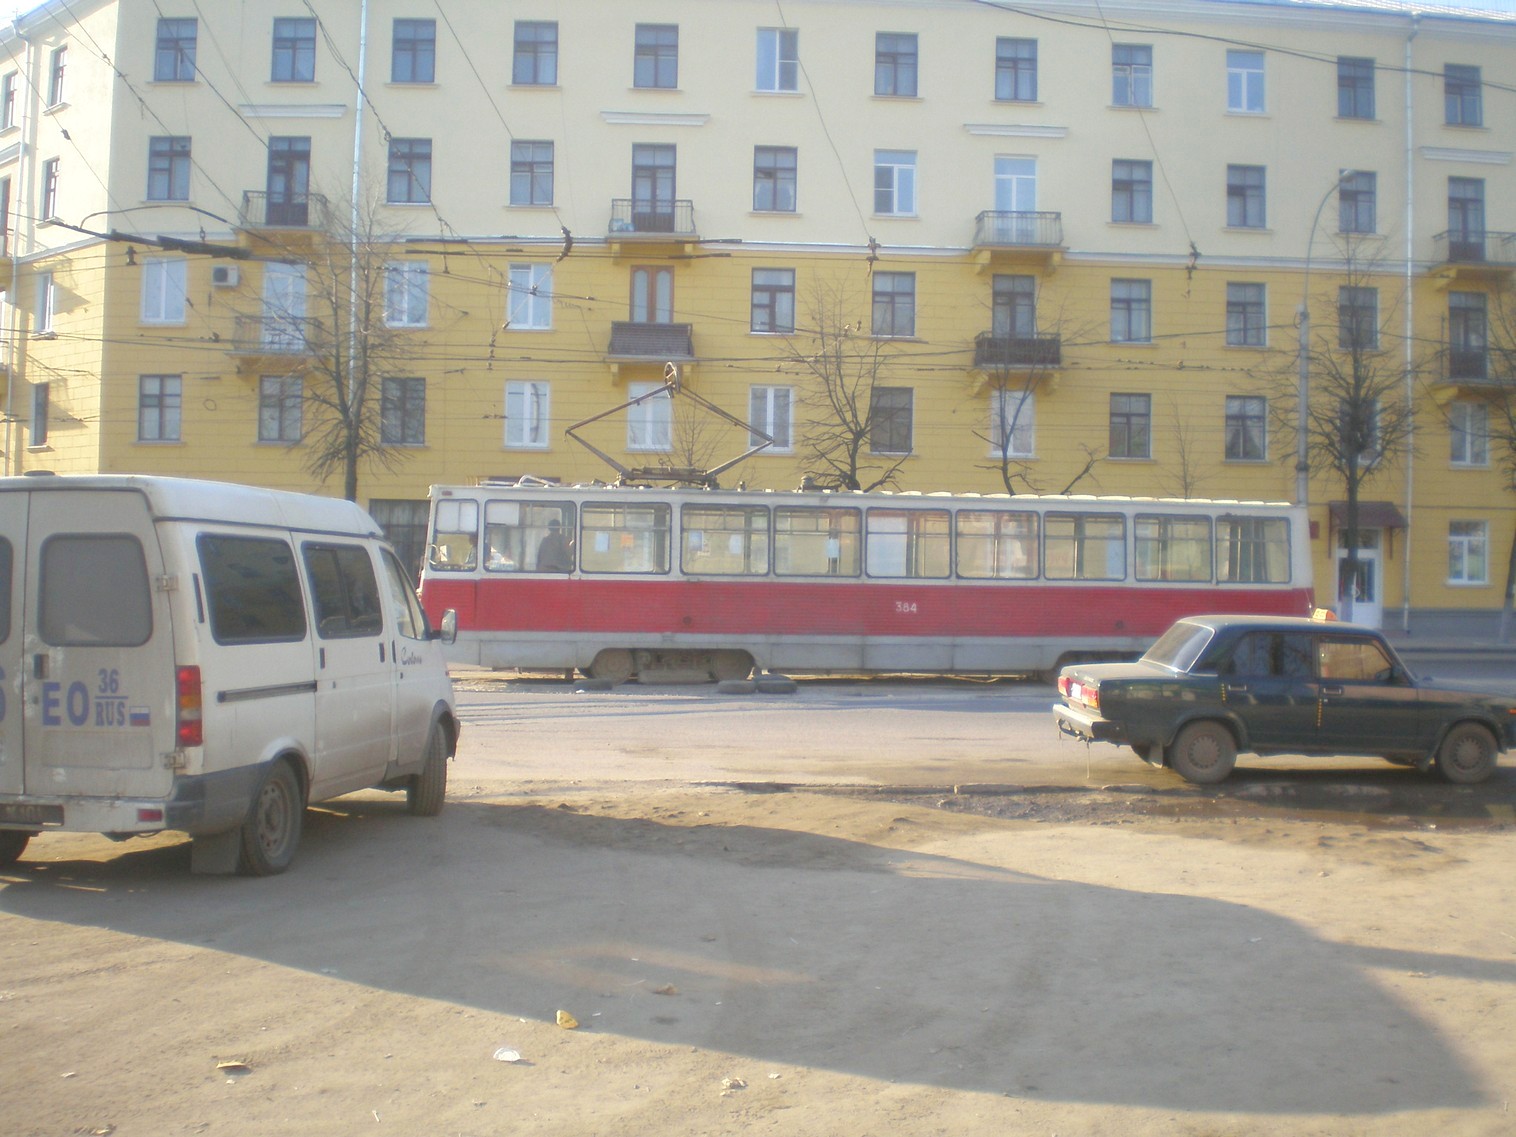 Воронежский трамвай  —  фотографии, сделанные в 2009 году (часть 1)